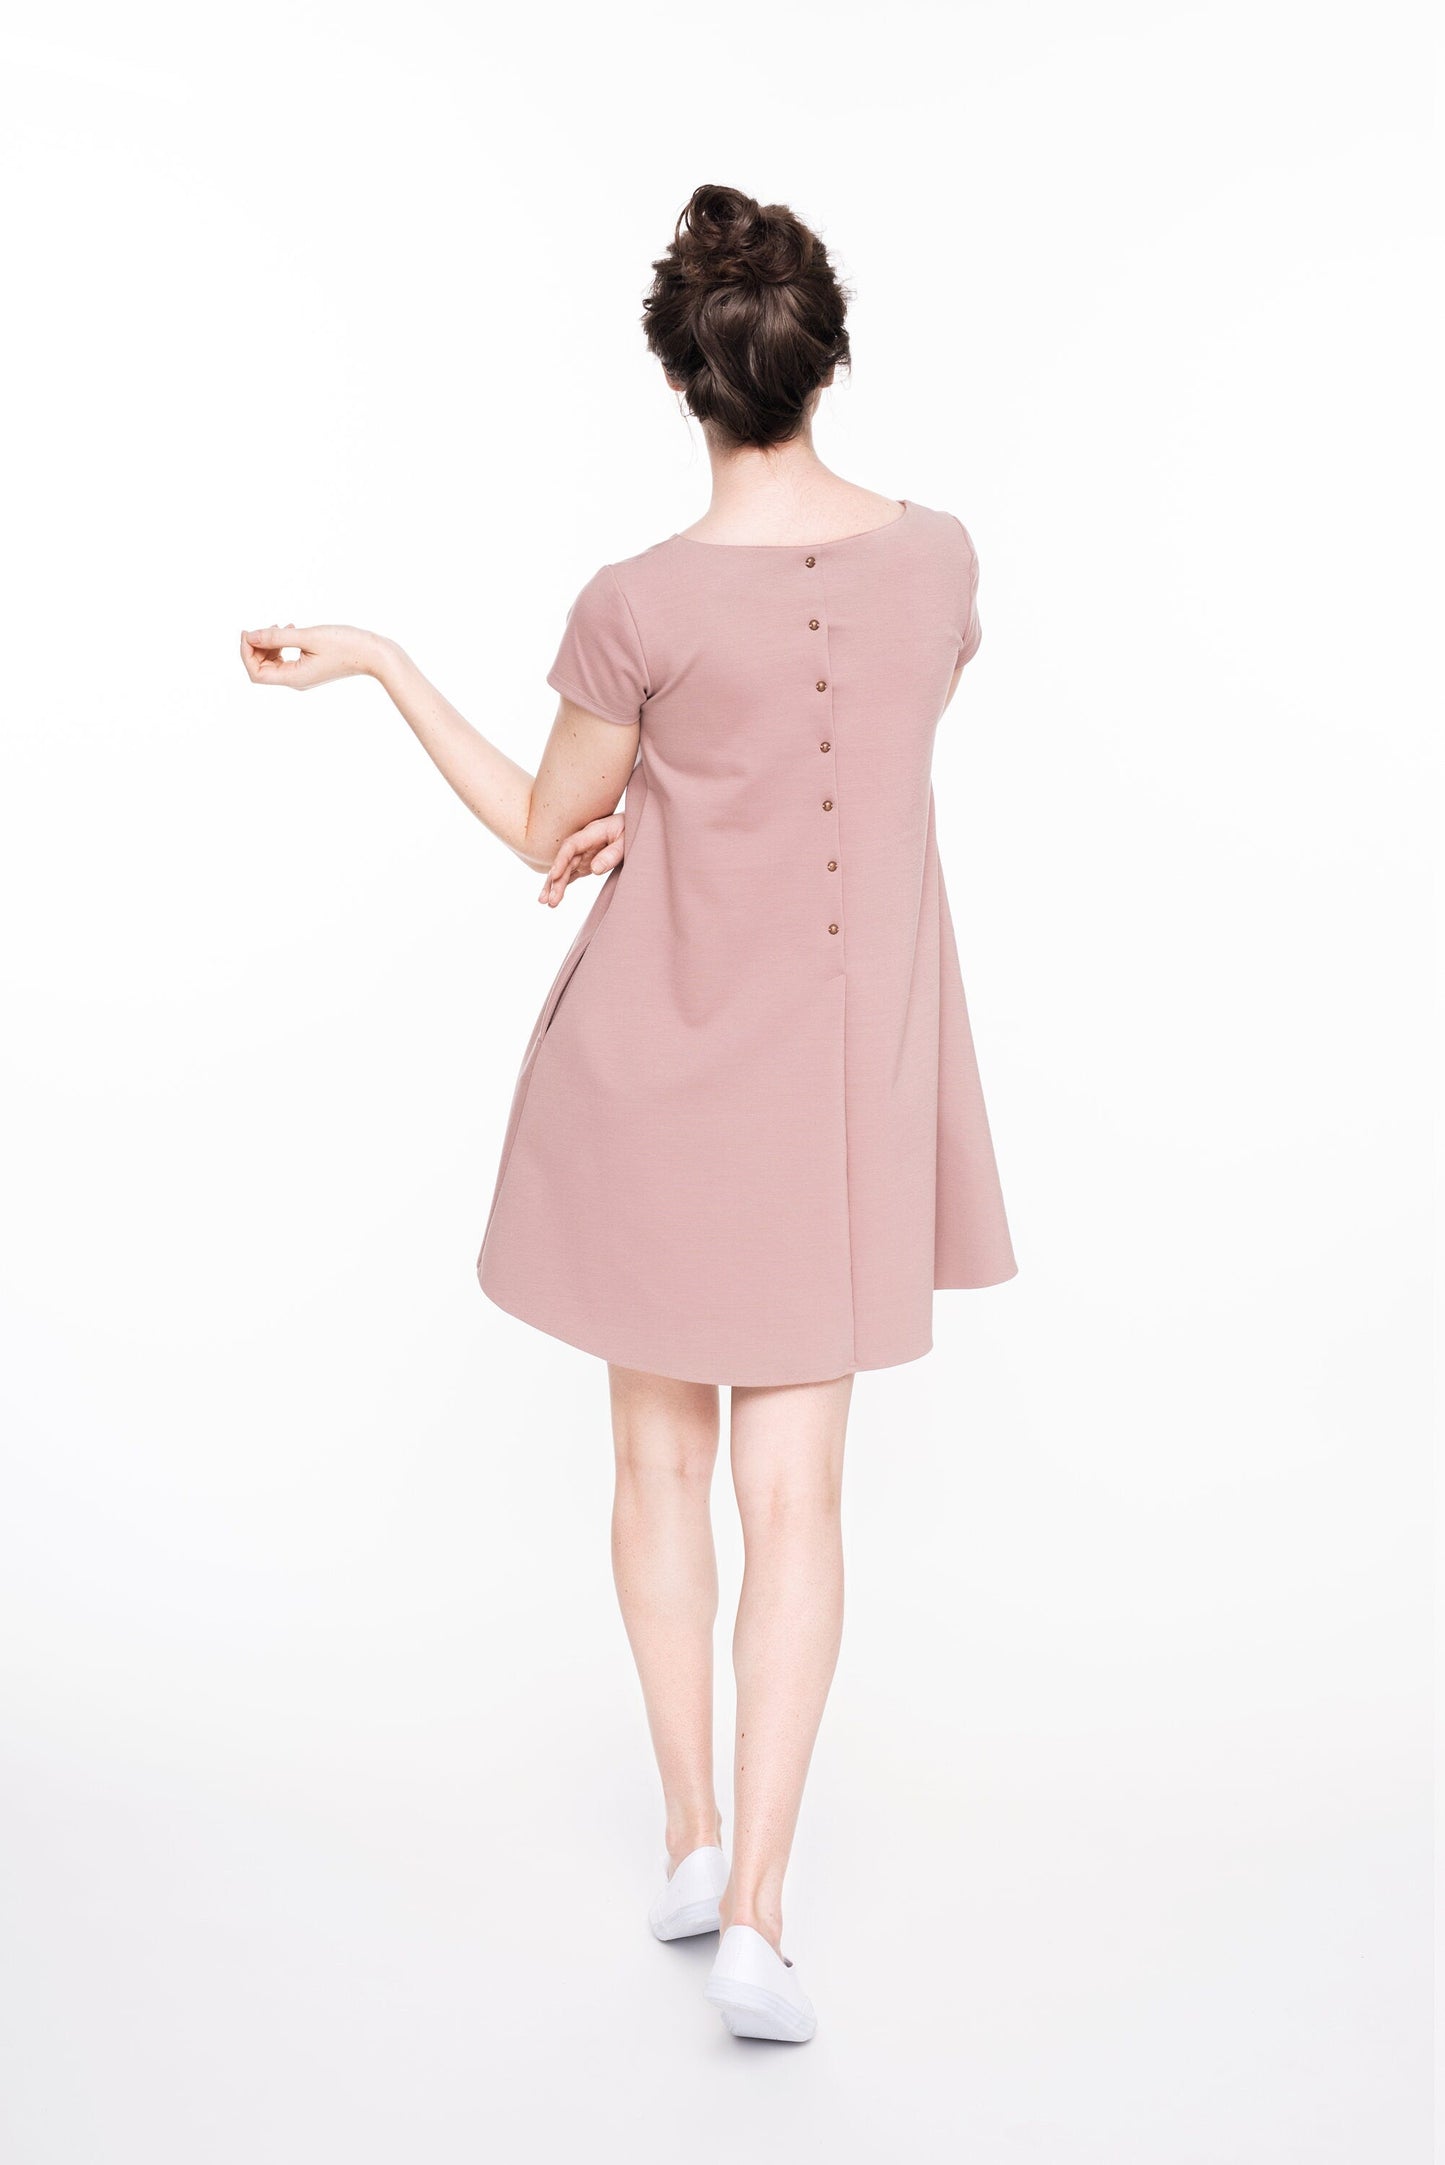 LeMuse SUMMER CALMNESS dress with buttons, Light gray, M